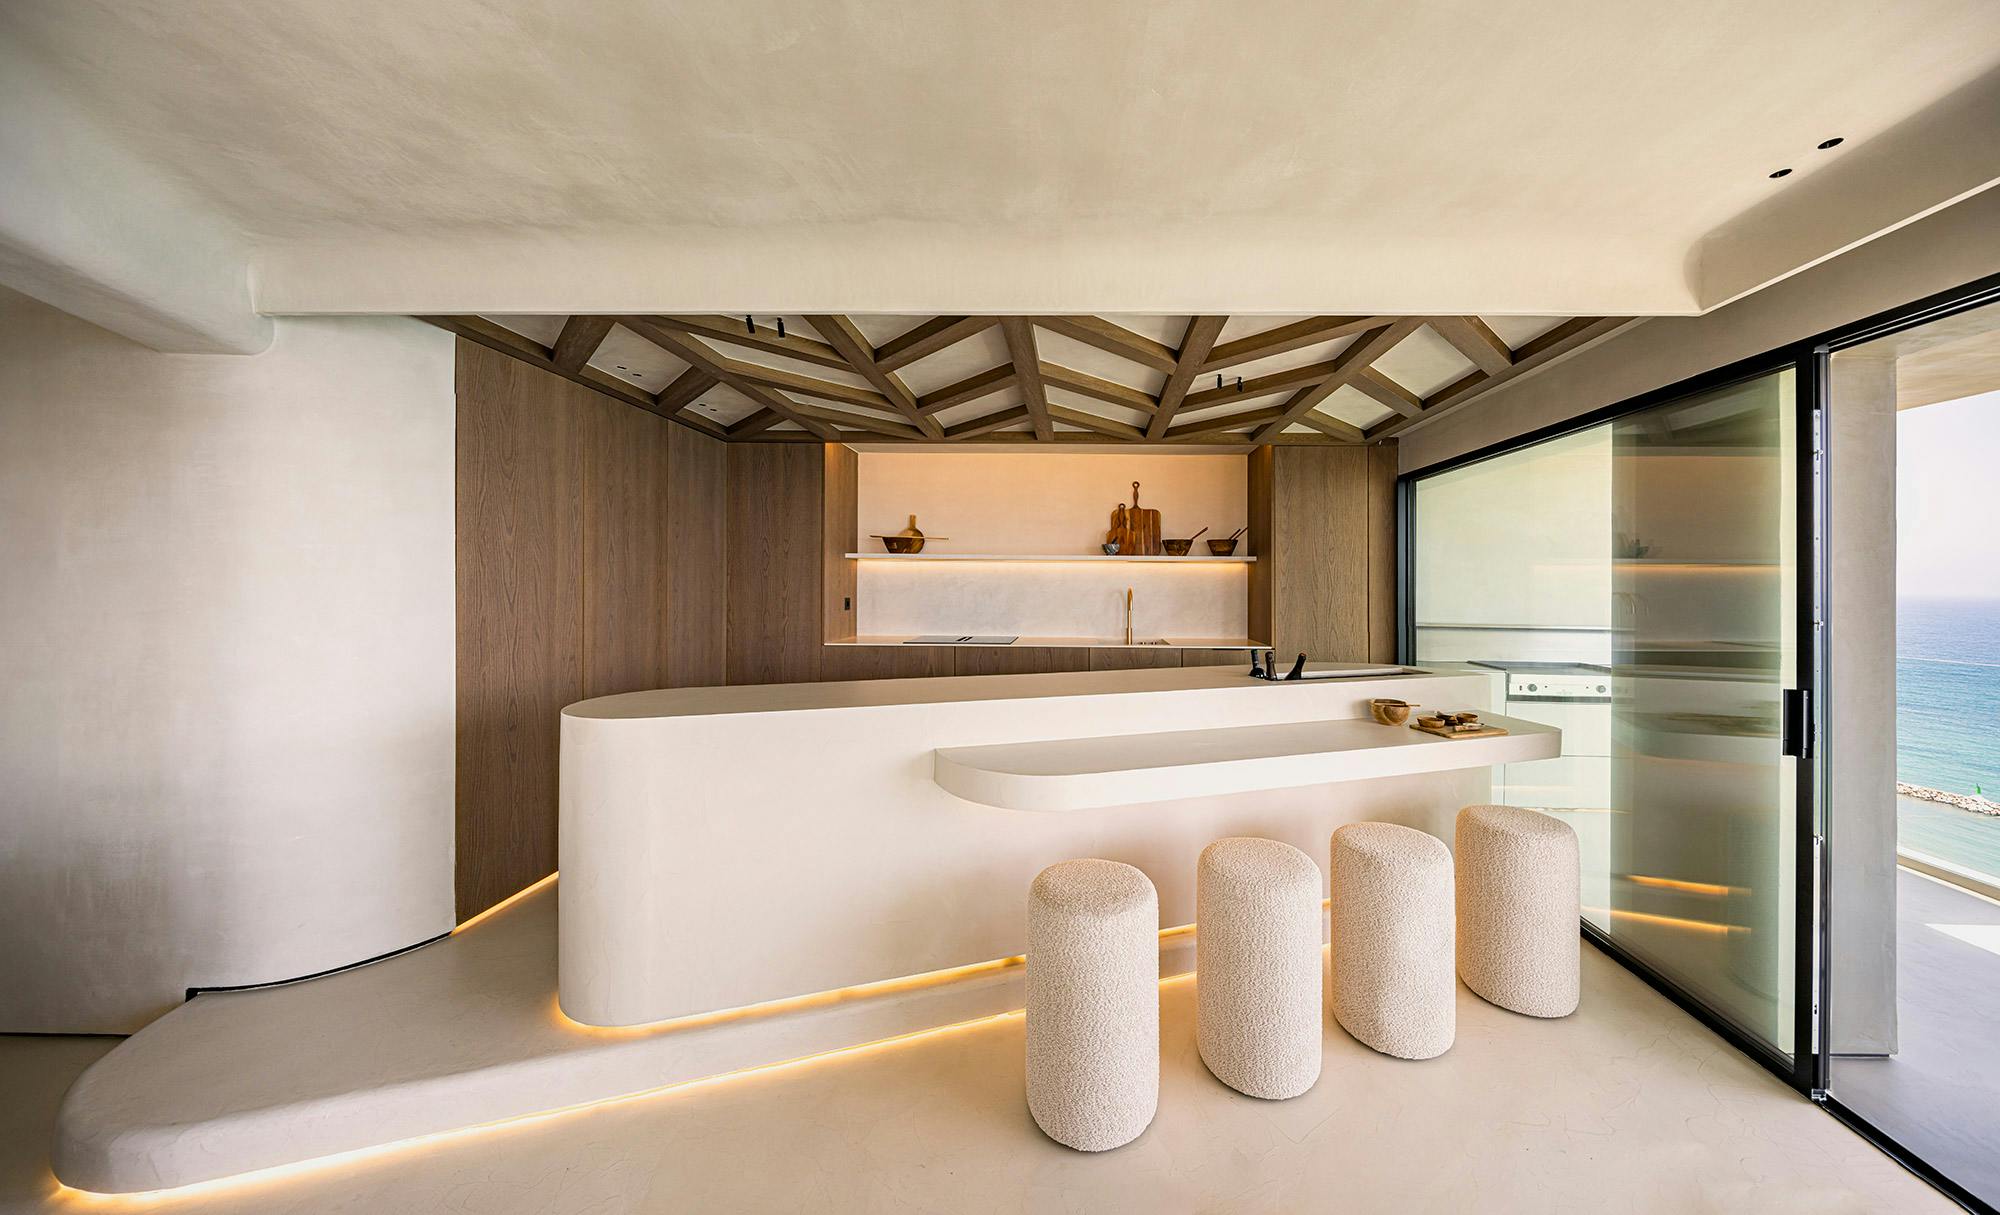 Numero immagine 48 della sezione corrente di Silestone and Dekton stand out in a minimalist, contemporary and refined interior design di Cosentino Italia